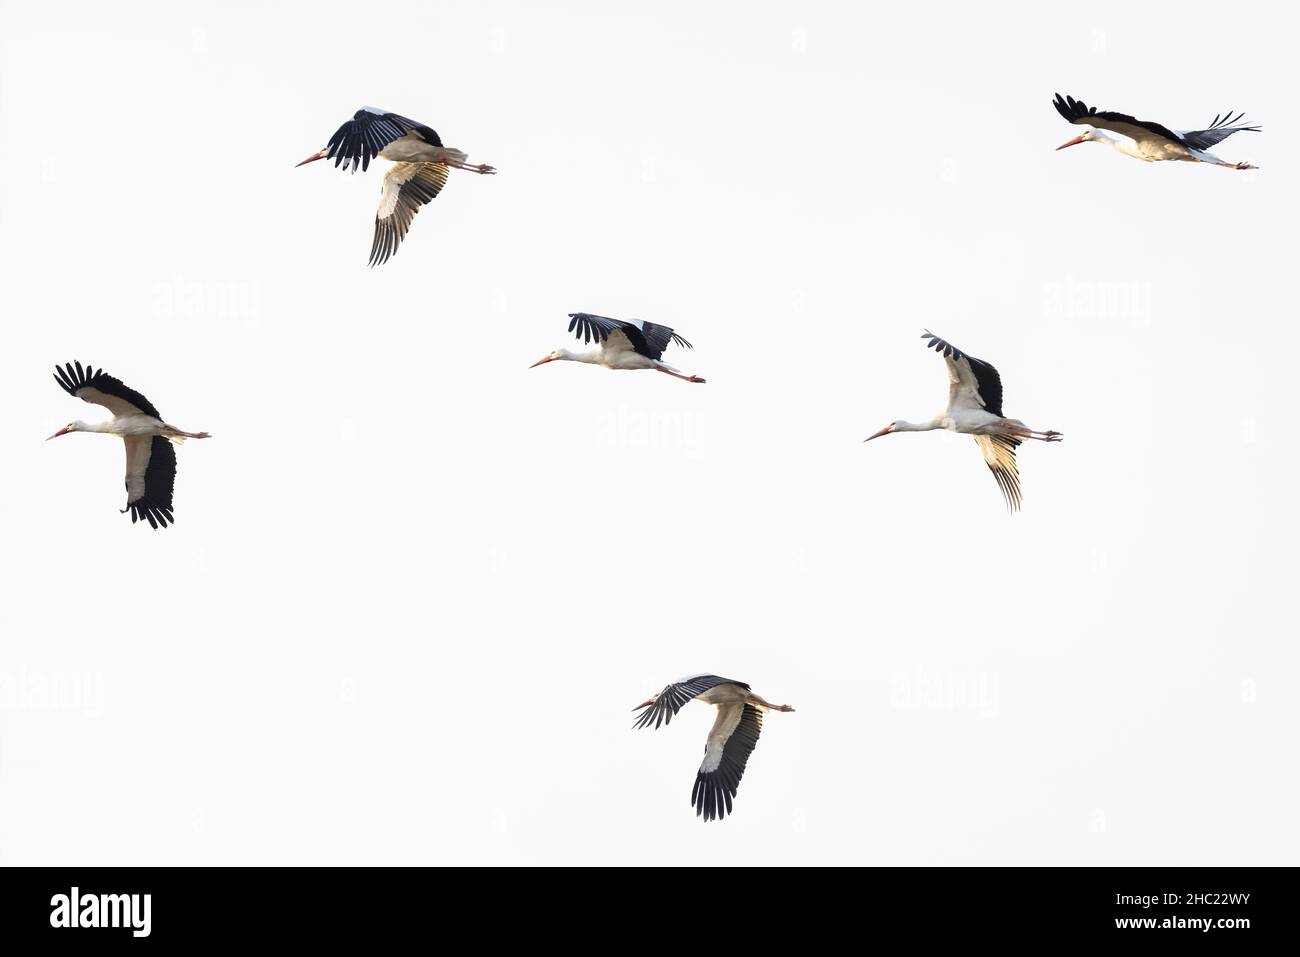 Flock of White Storks flying across the sky Stock Photo